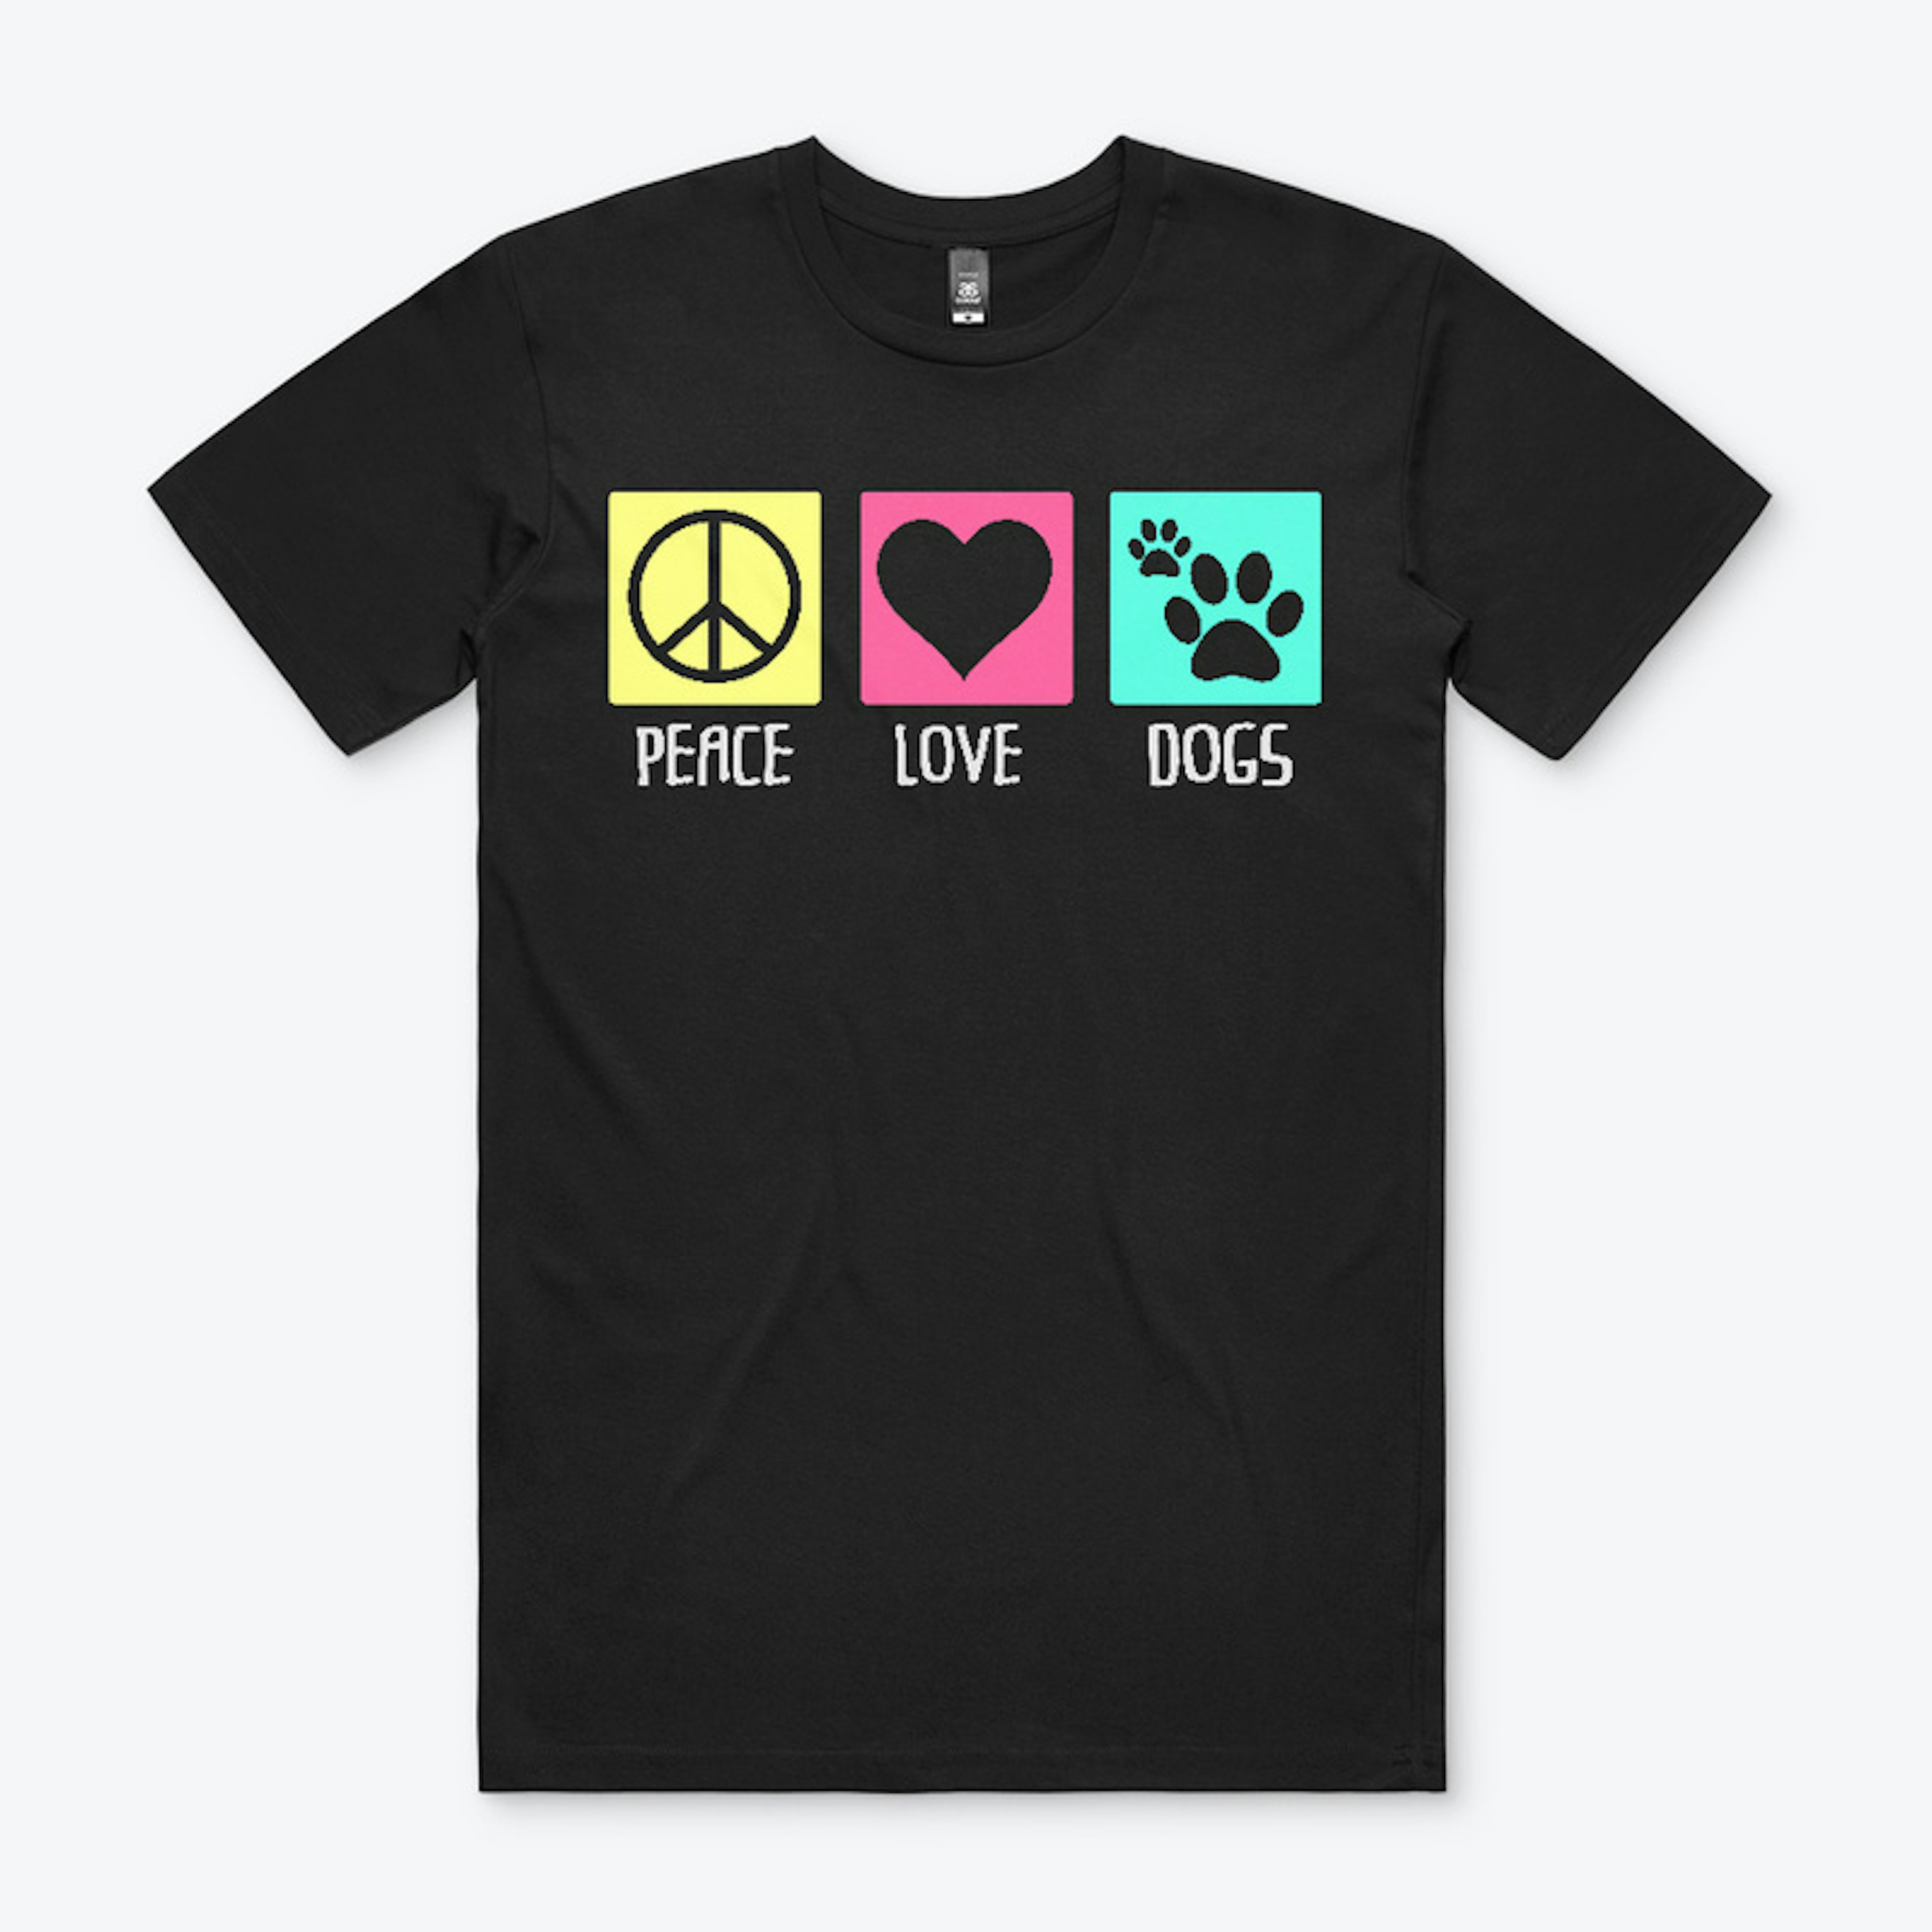 Peace + Love + Dogs